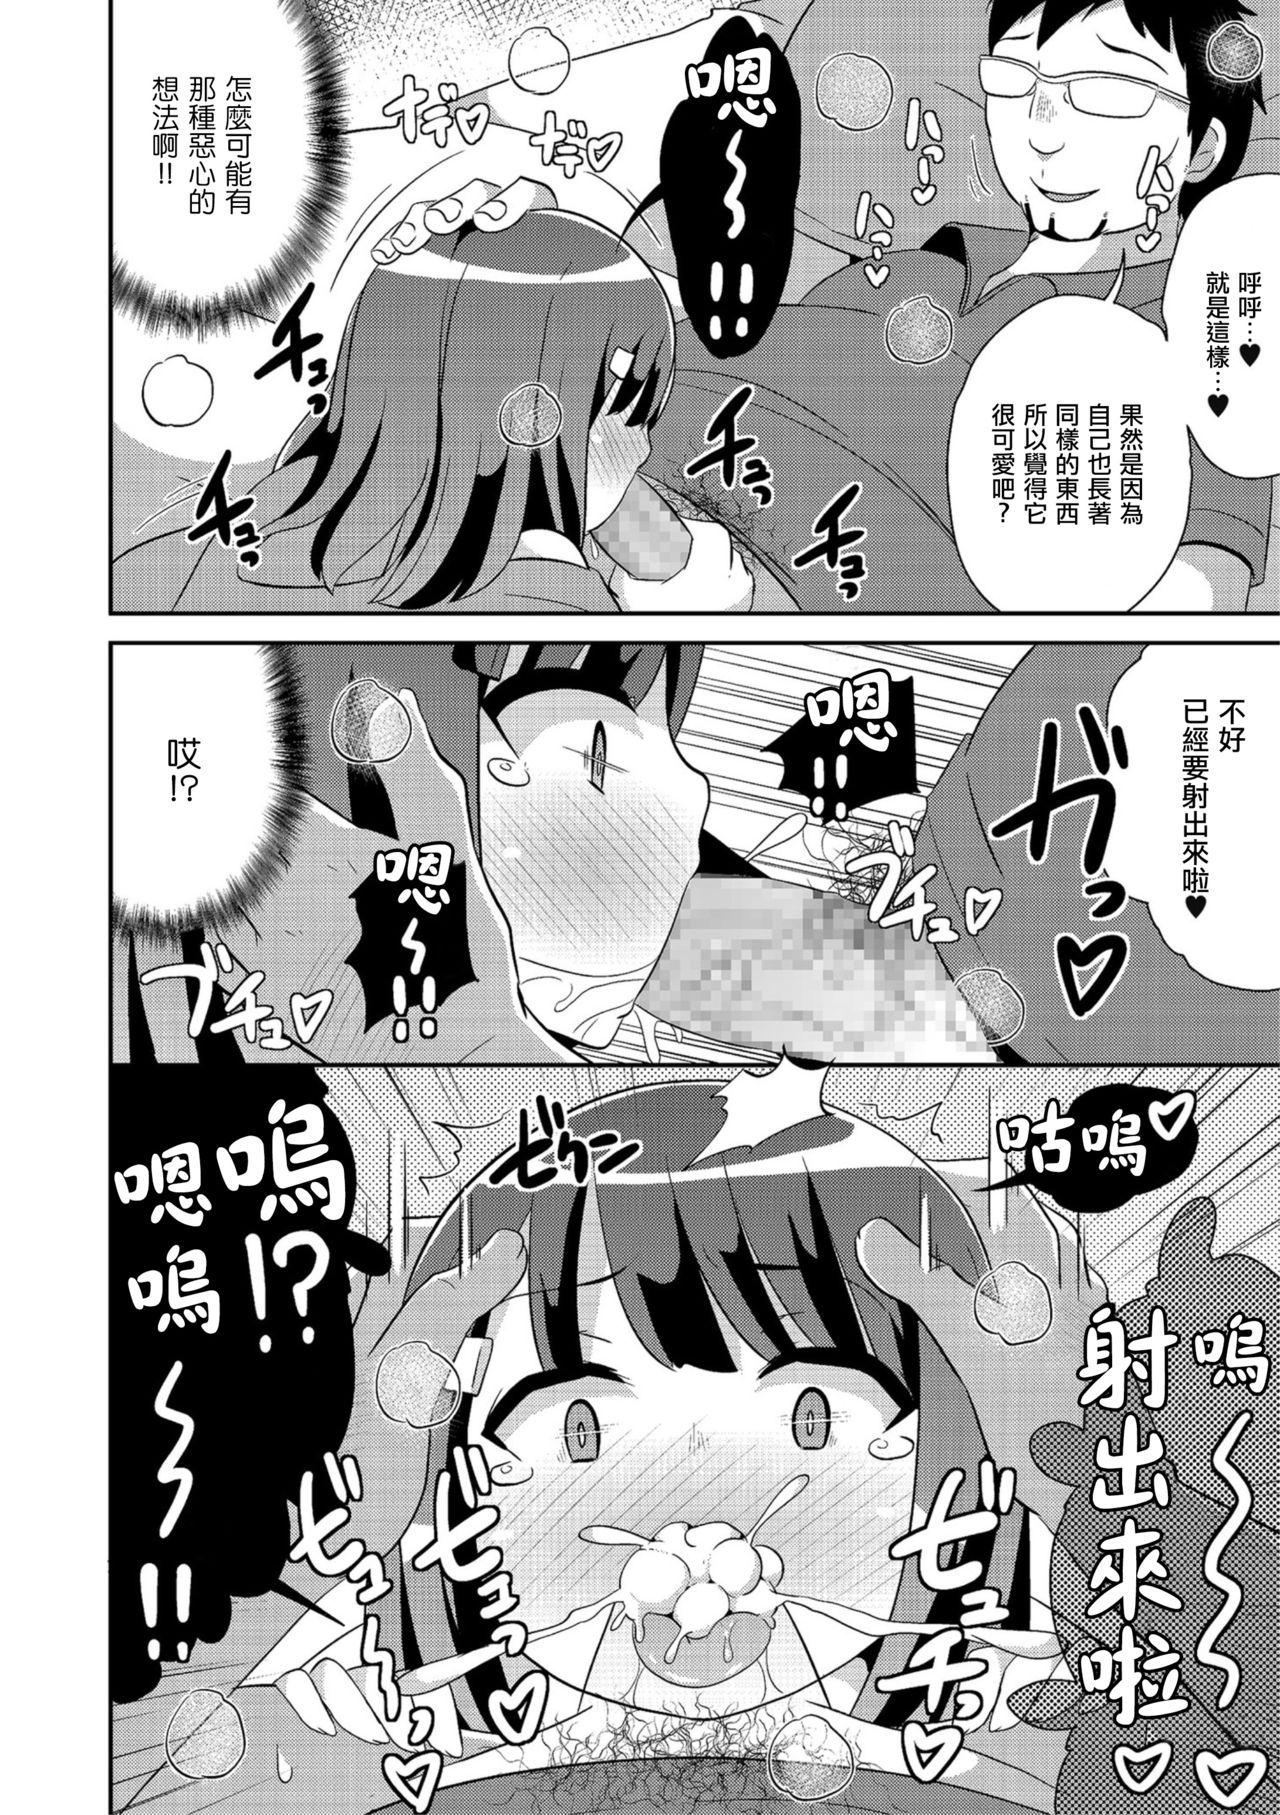 Sucking Cocks Nama Hame wa Mesu Homo no Hajimari Sensual - Page 6